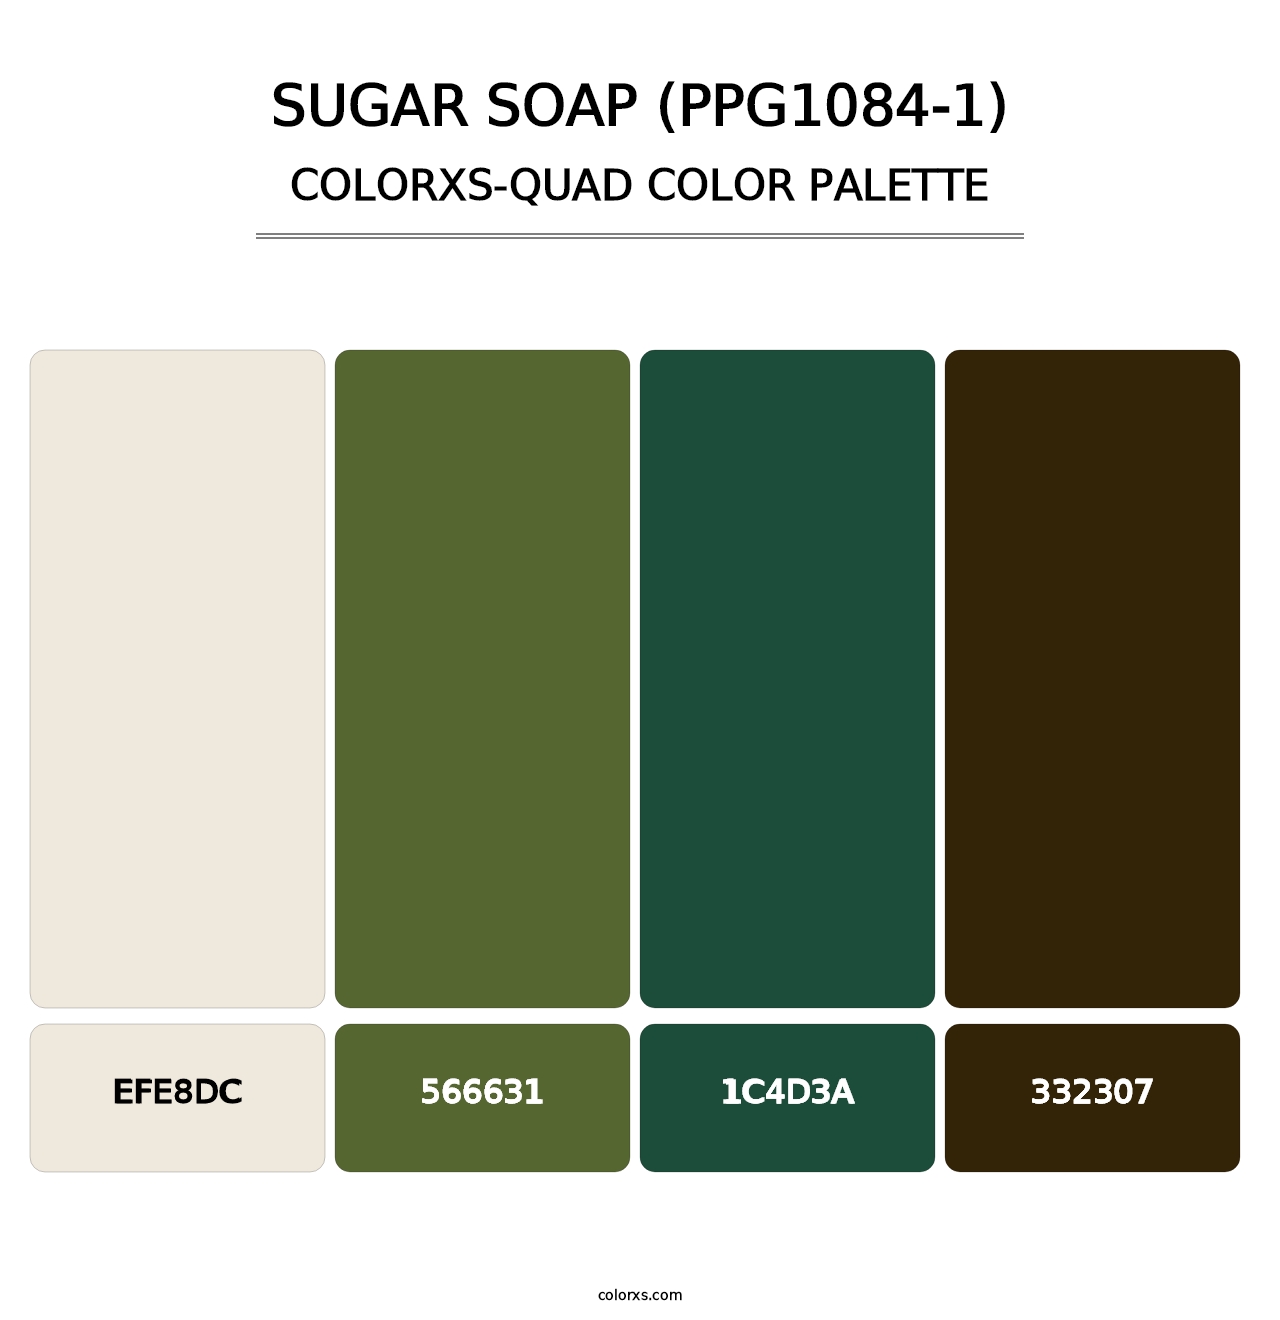 Sugar Soap (PPG1084-1) - Colorxs Quad Palette